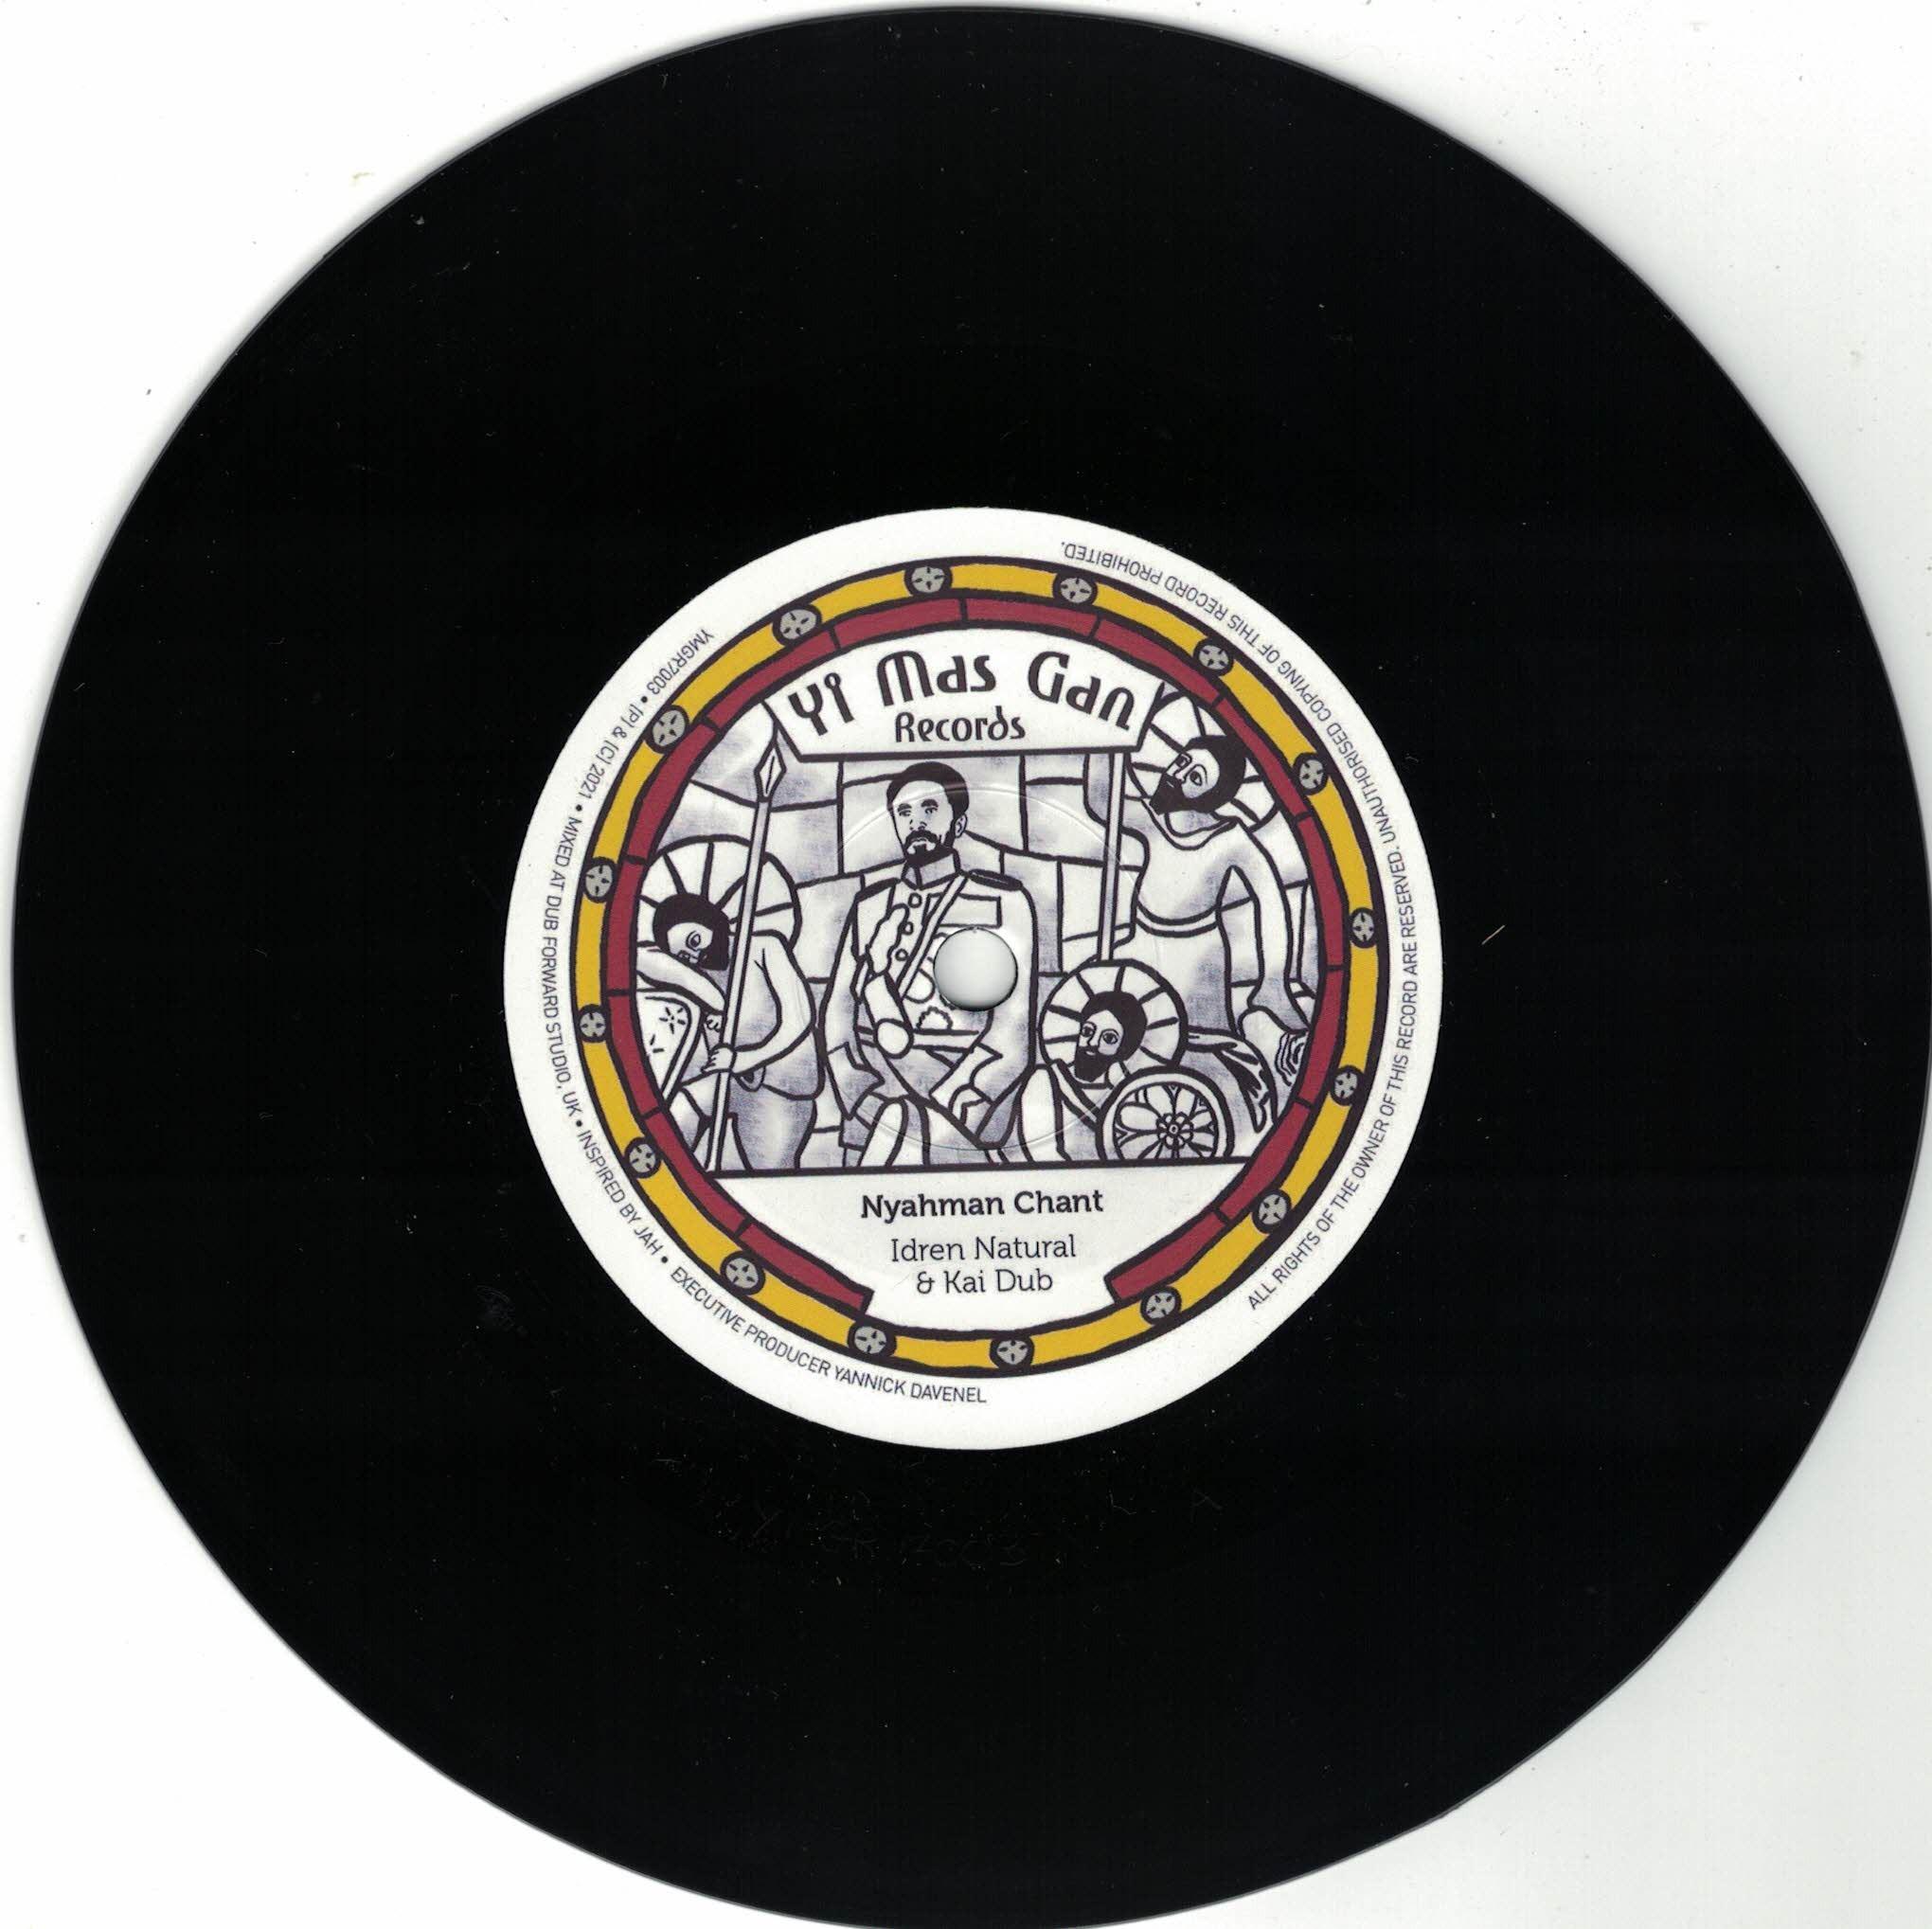 Idren Natural & Kai Dub - Nyahman Chant Yi Mas Gan Records 7 inch